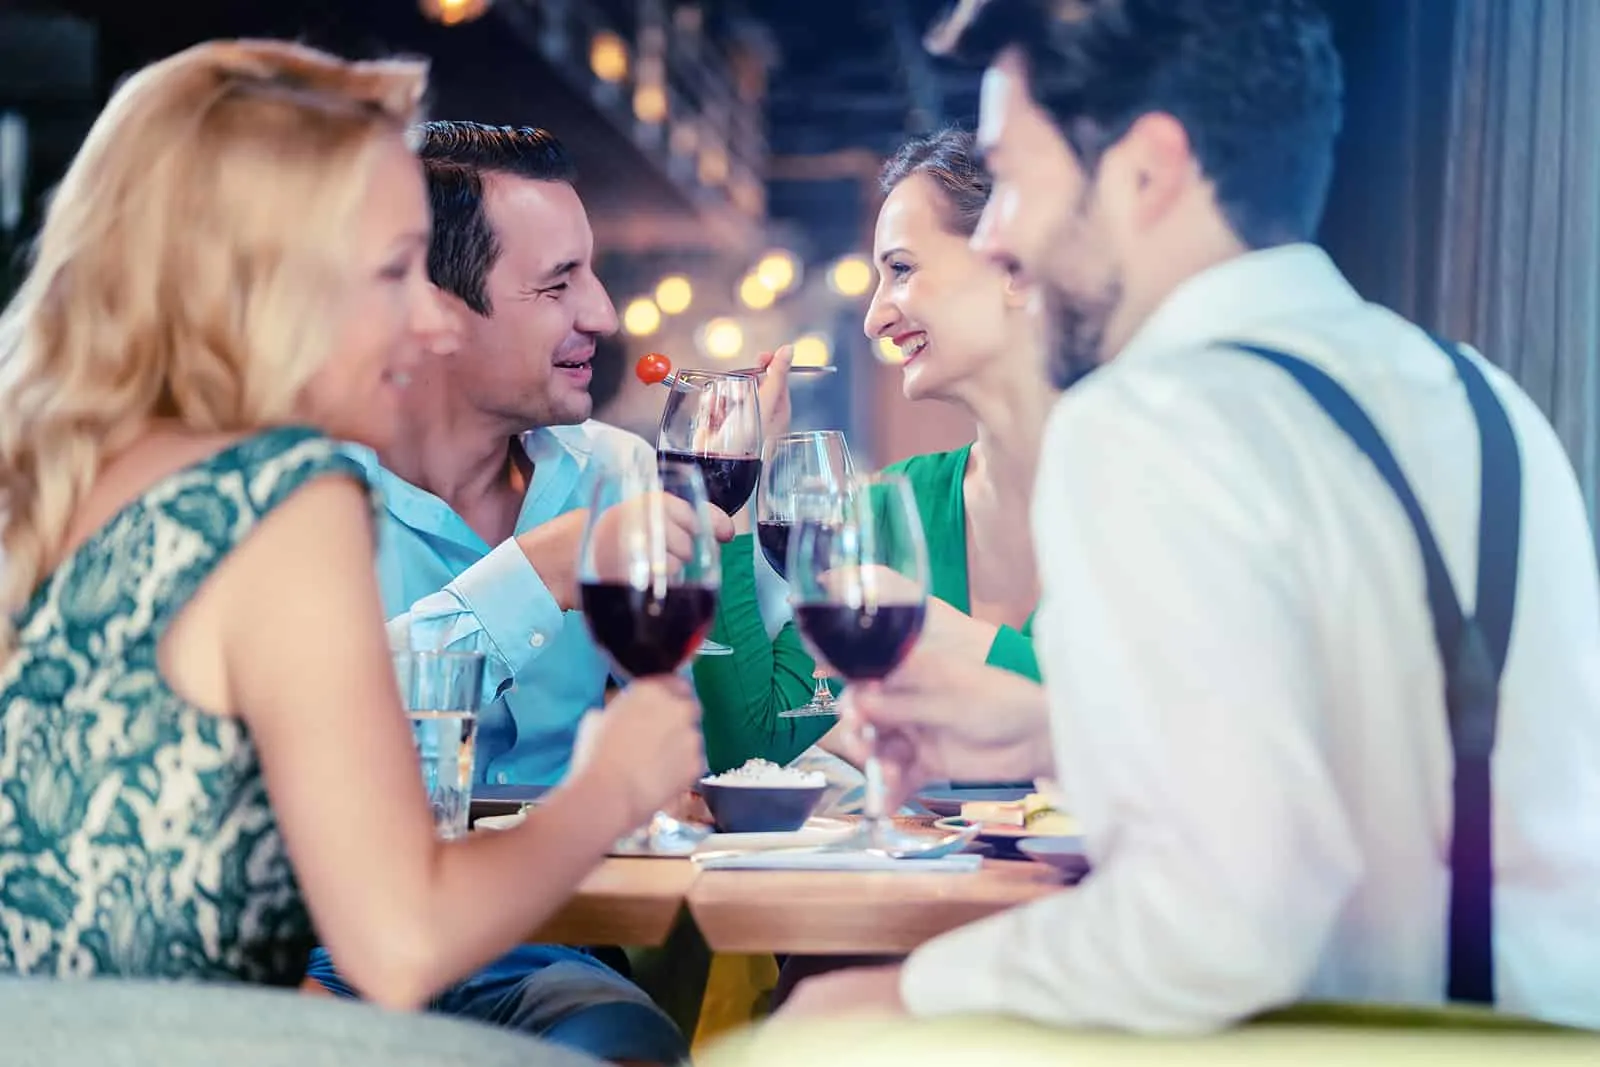 Freunde trinken Wein in einem Restaurant auf einem doppelten Date